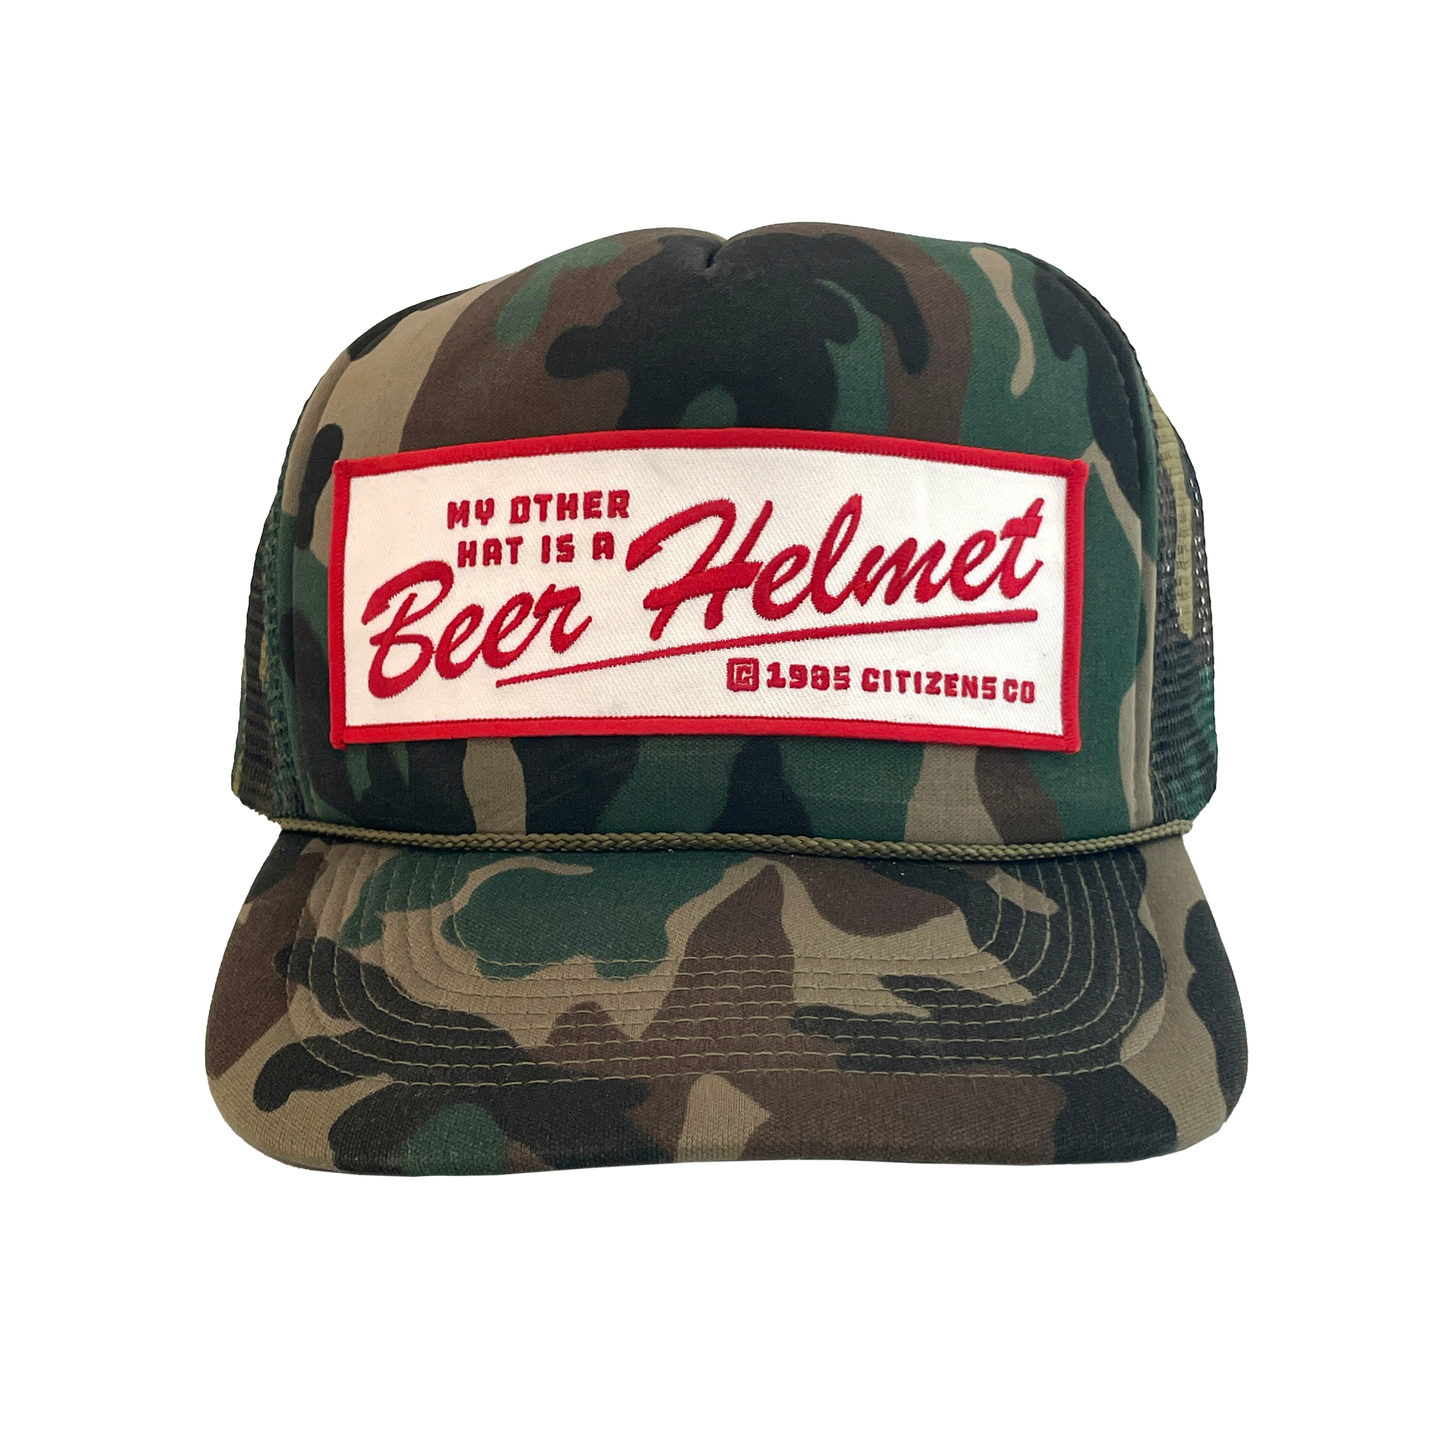 "BEER HELMET" Deadstock Trucker Hat